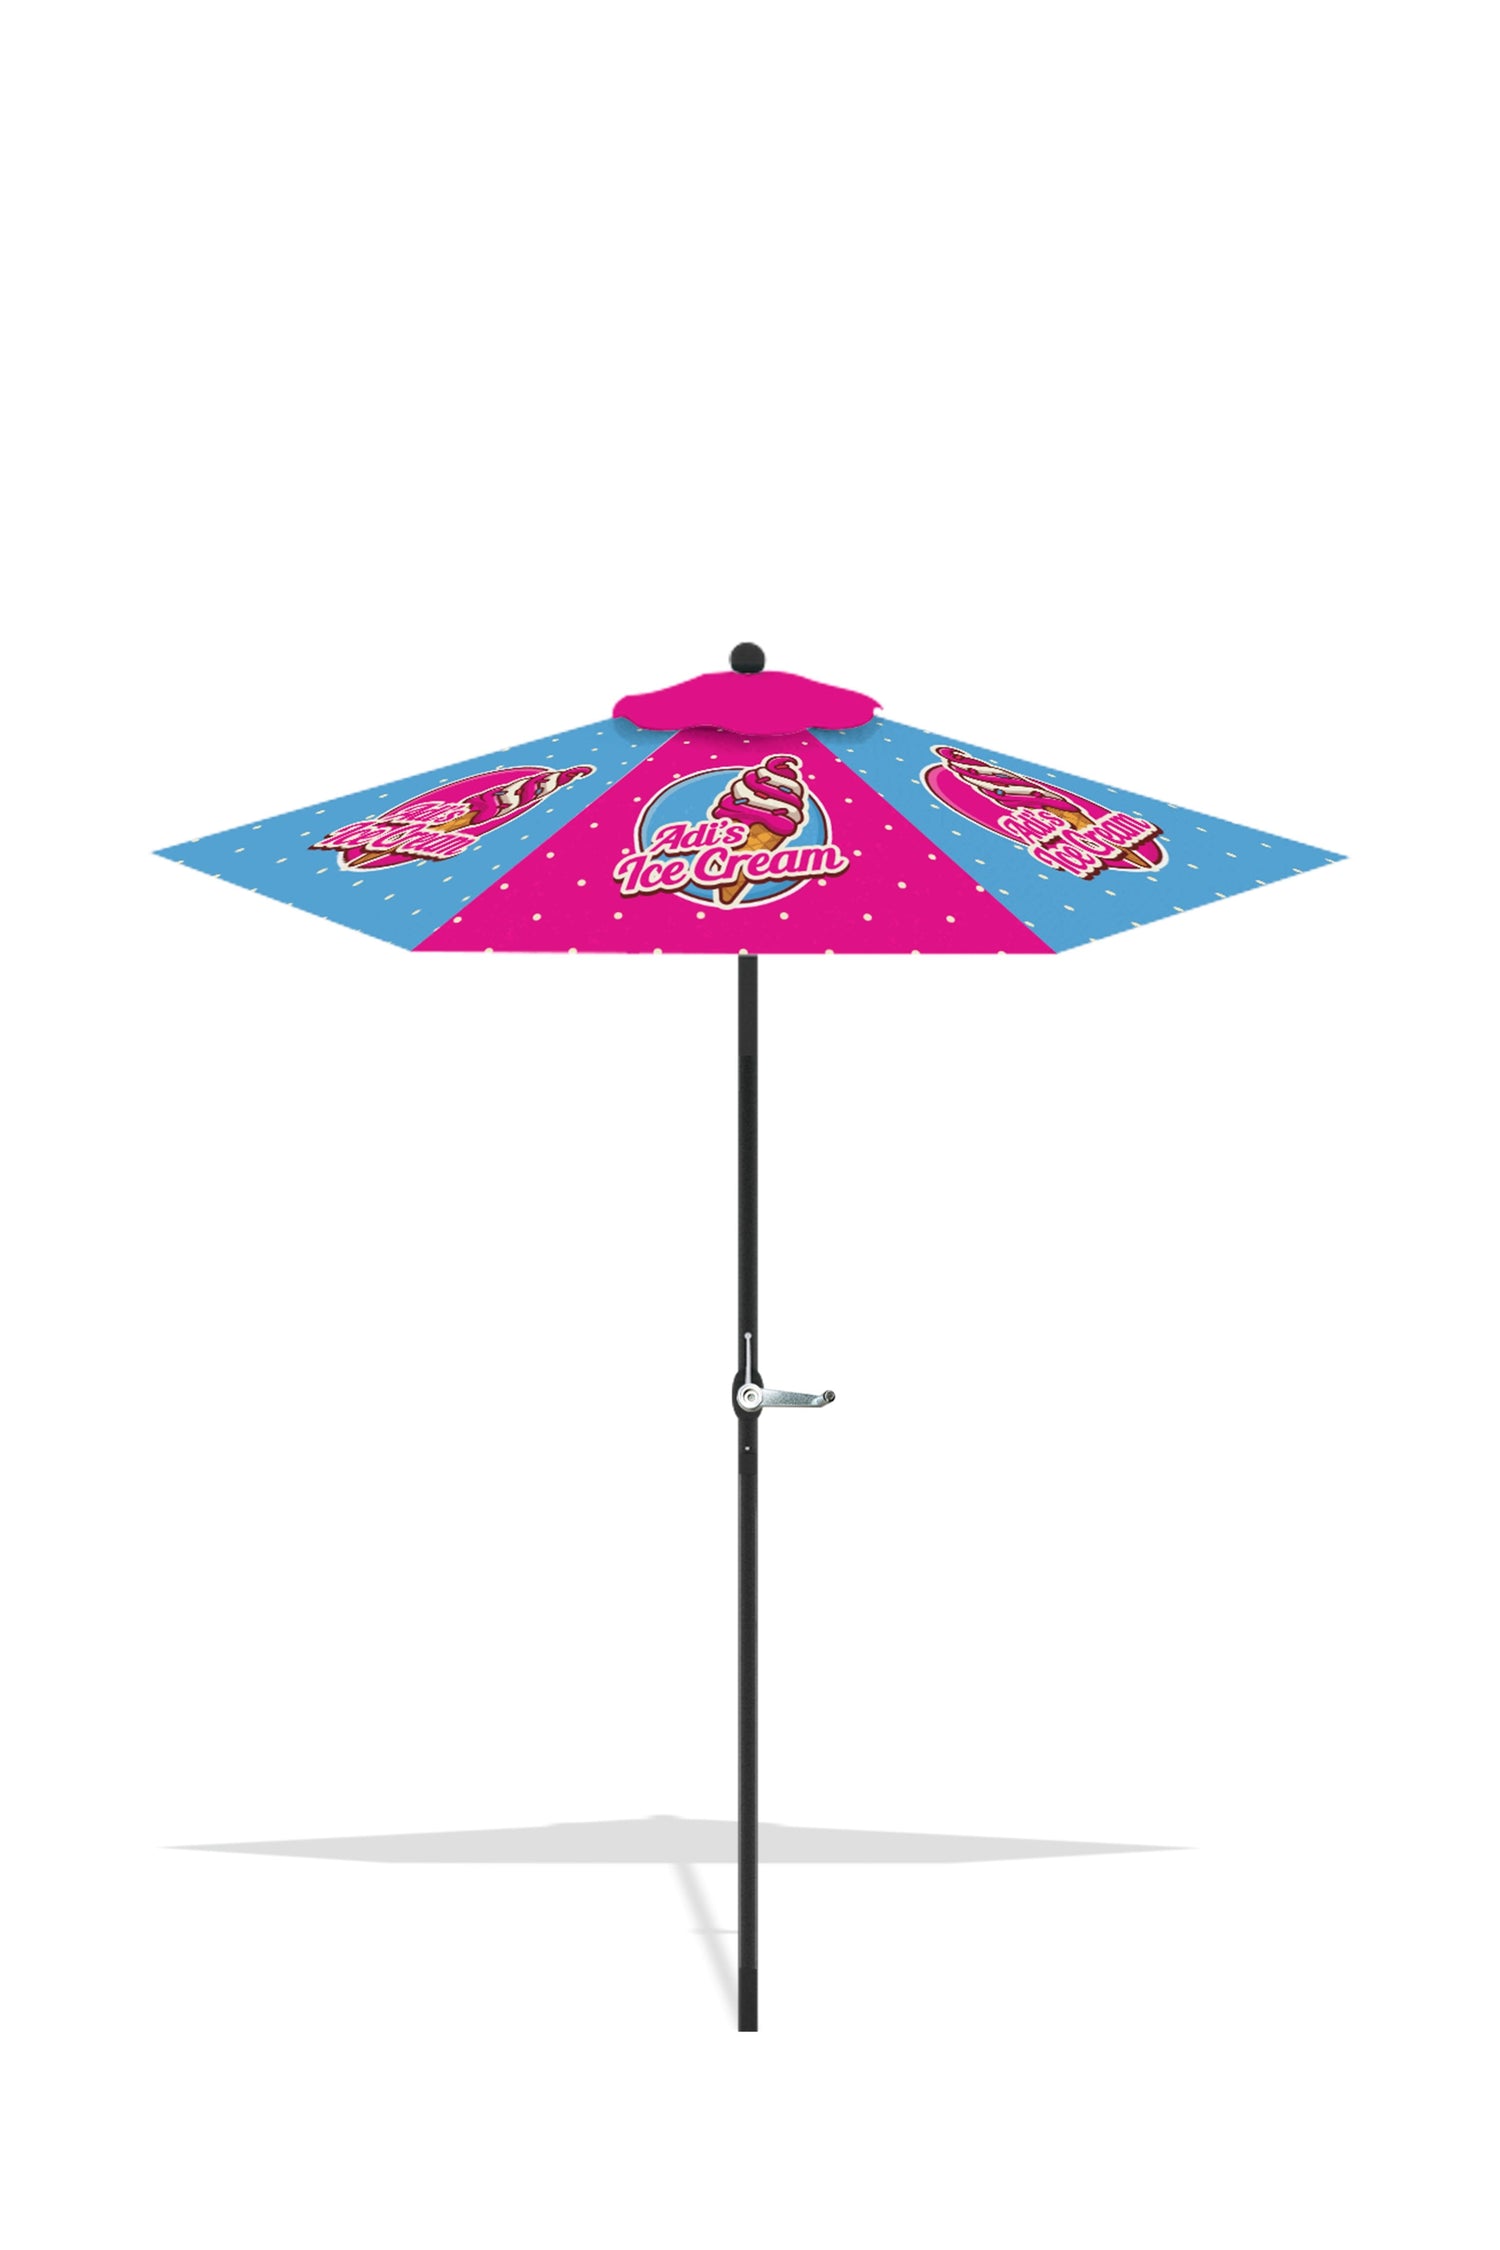 Custom Printed Patio Umbrella 10M7000113Set